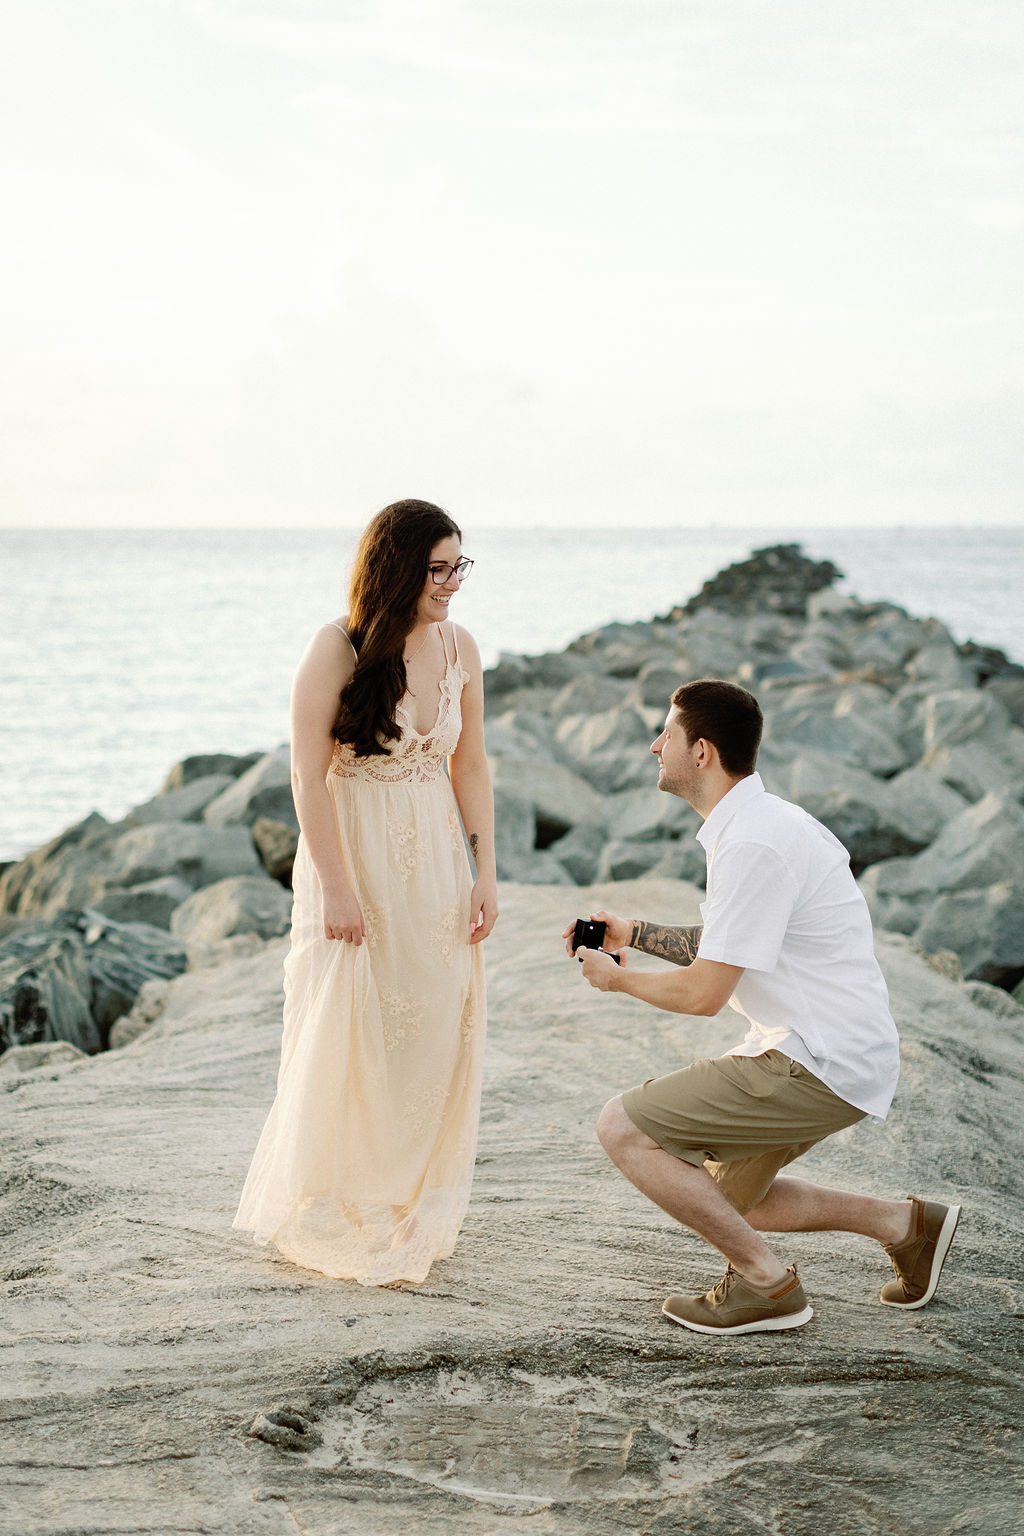 South Pointe Park Proposal, Miami Proposal Photographer, Surprise Proposal Miami, Erika Tuesta Photography